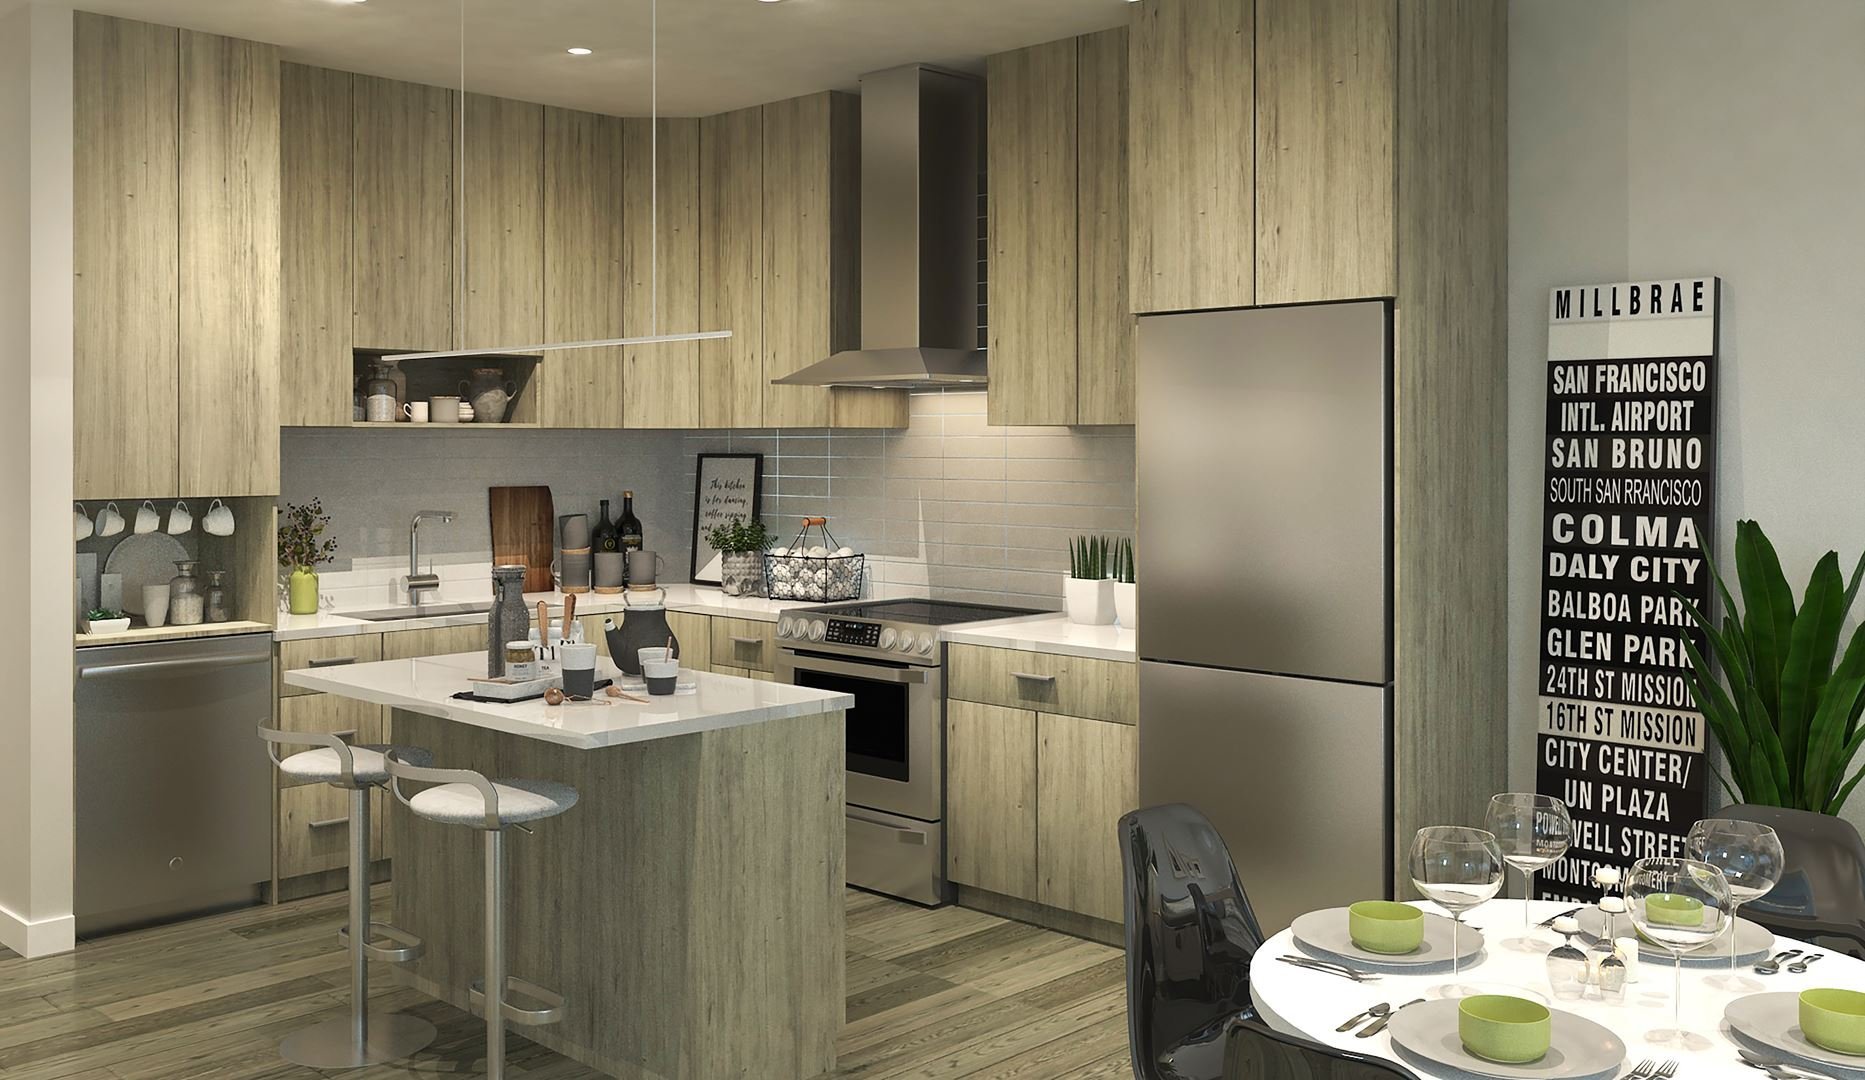 Green Square vert - Plan B kitchen rendering!